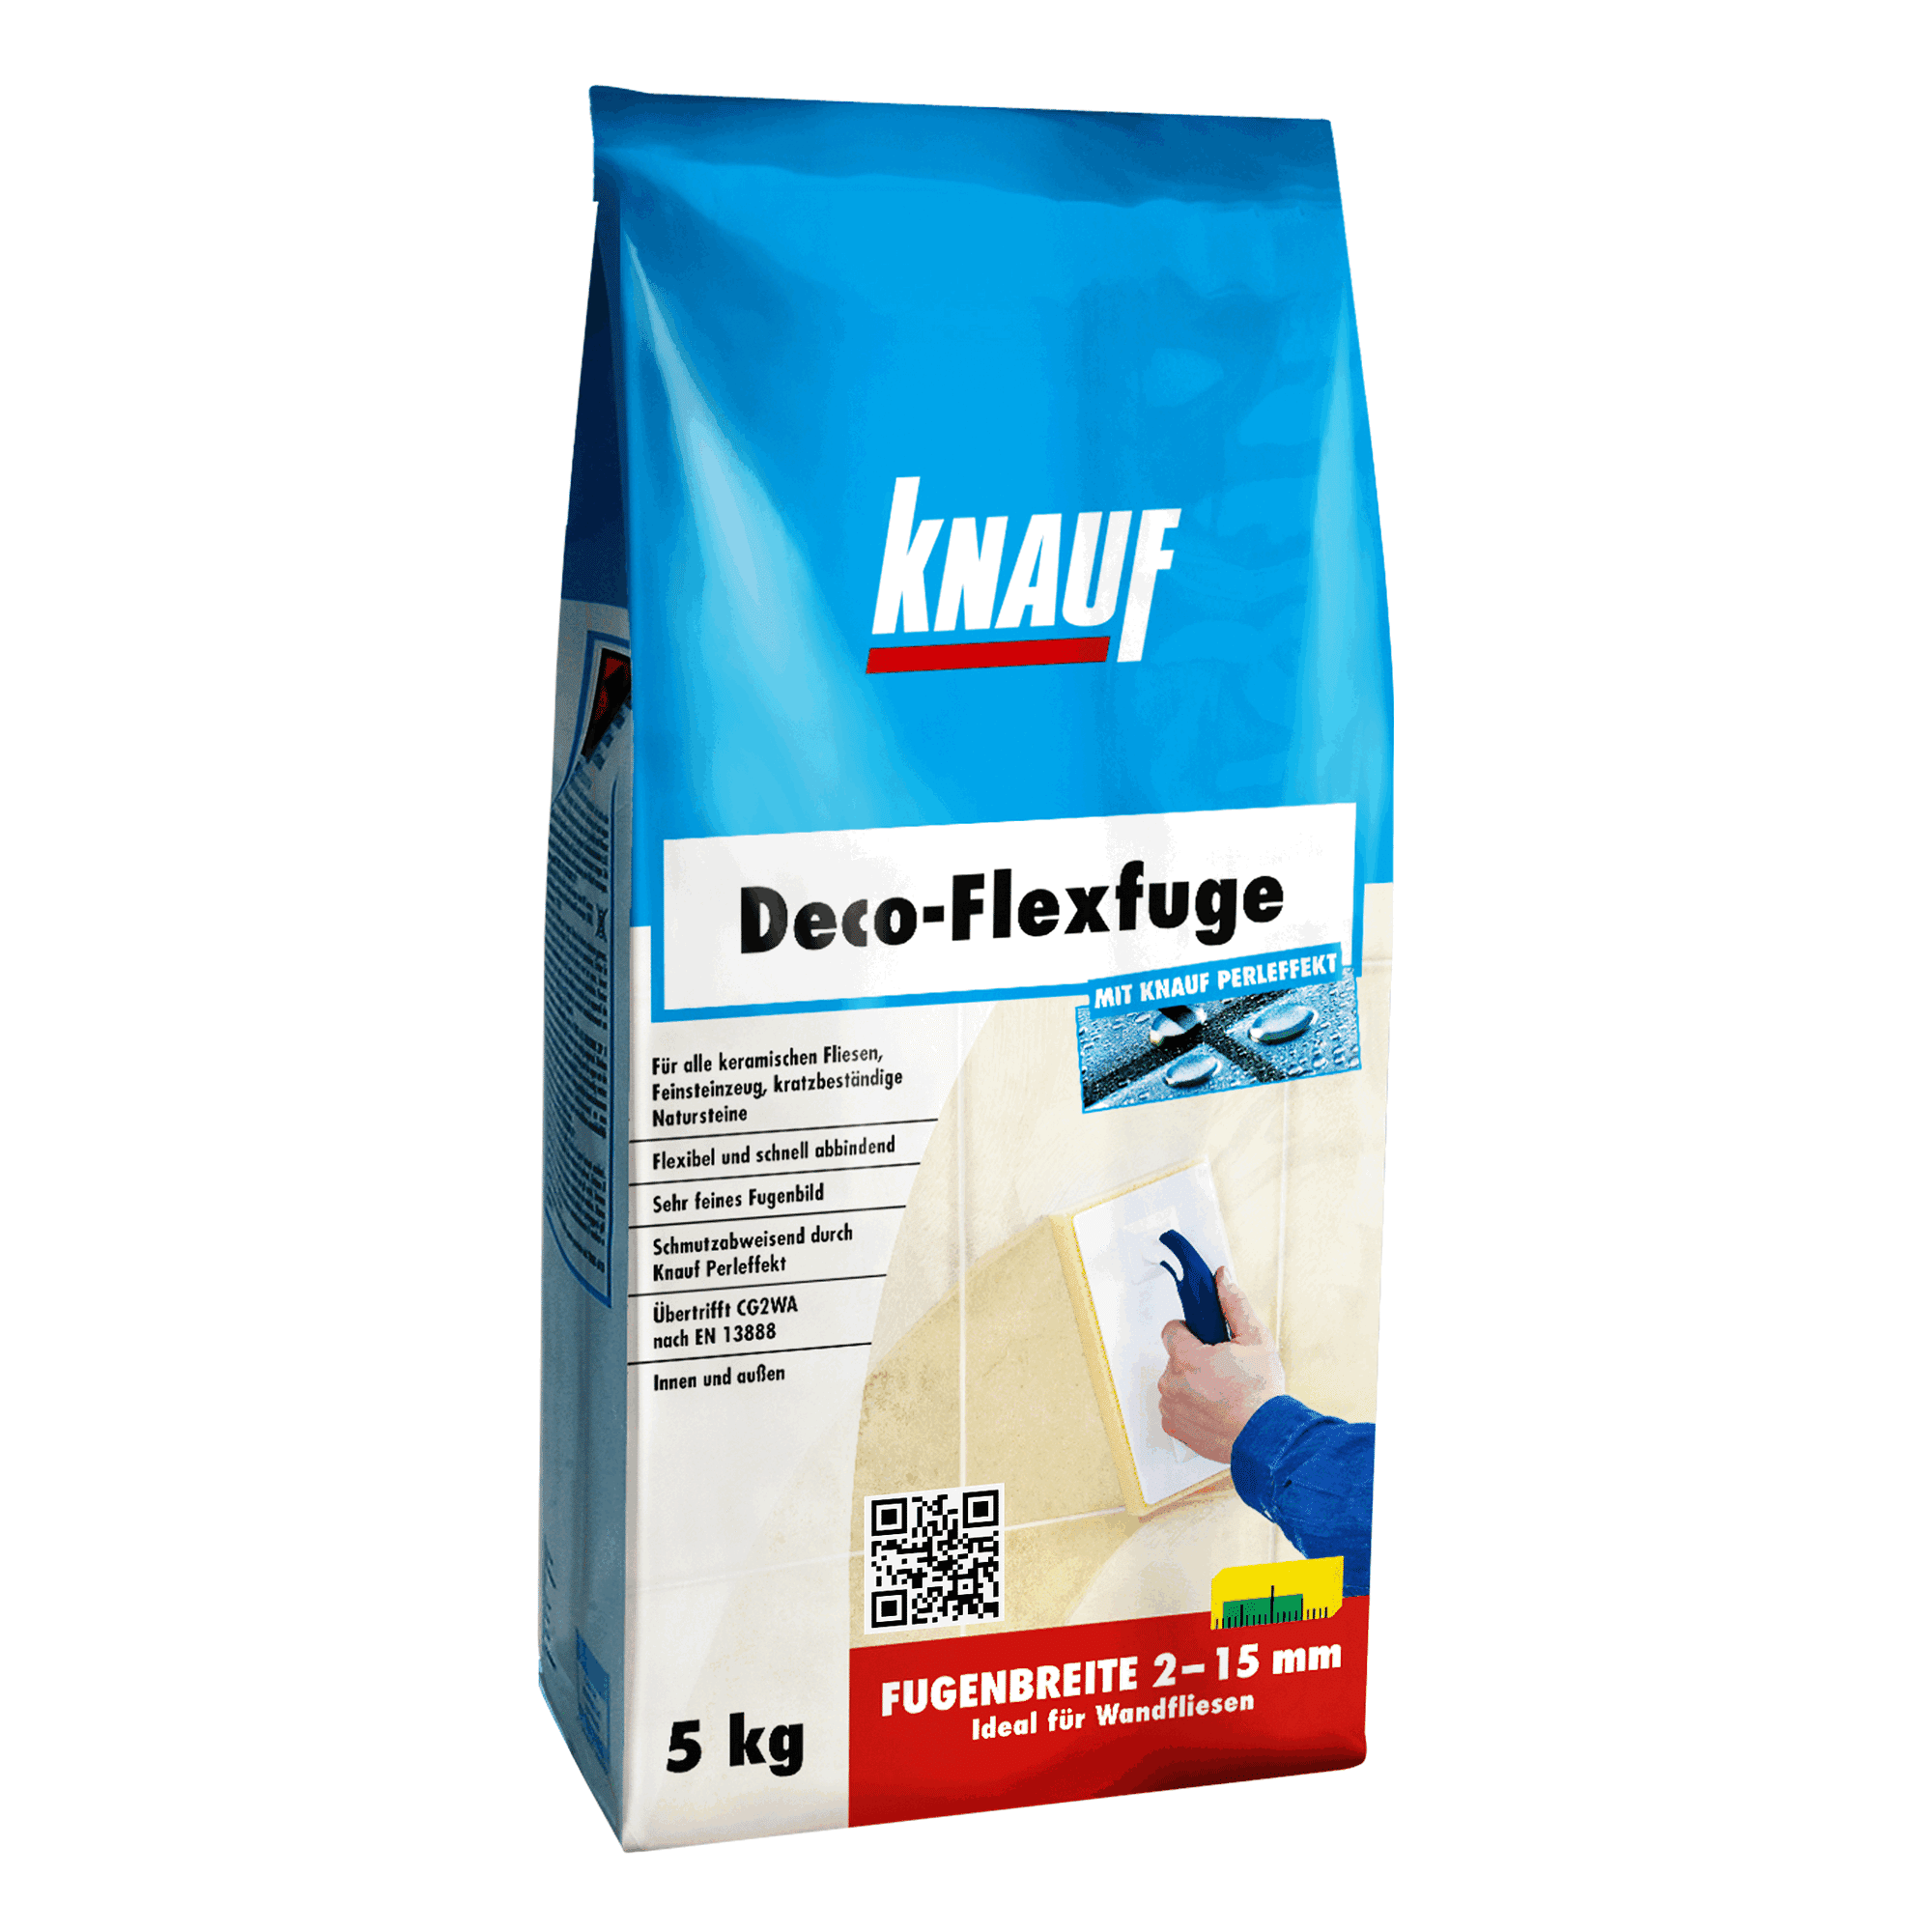 Fugenmörtel "Deco-Flexfuge" anemone 5 kg + product picture